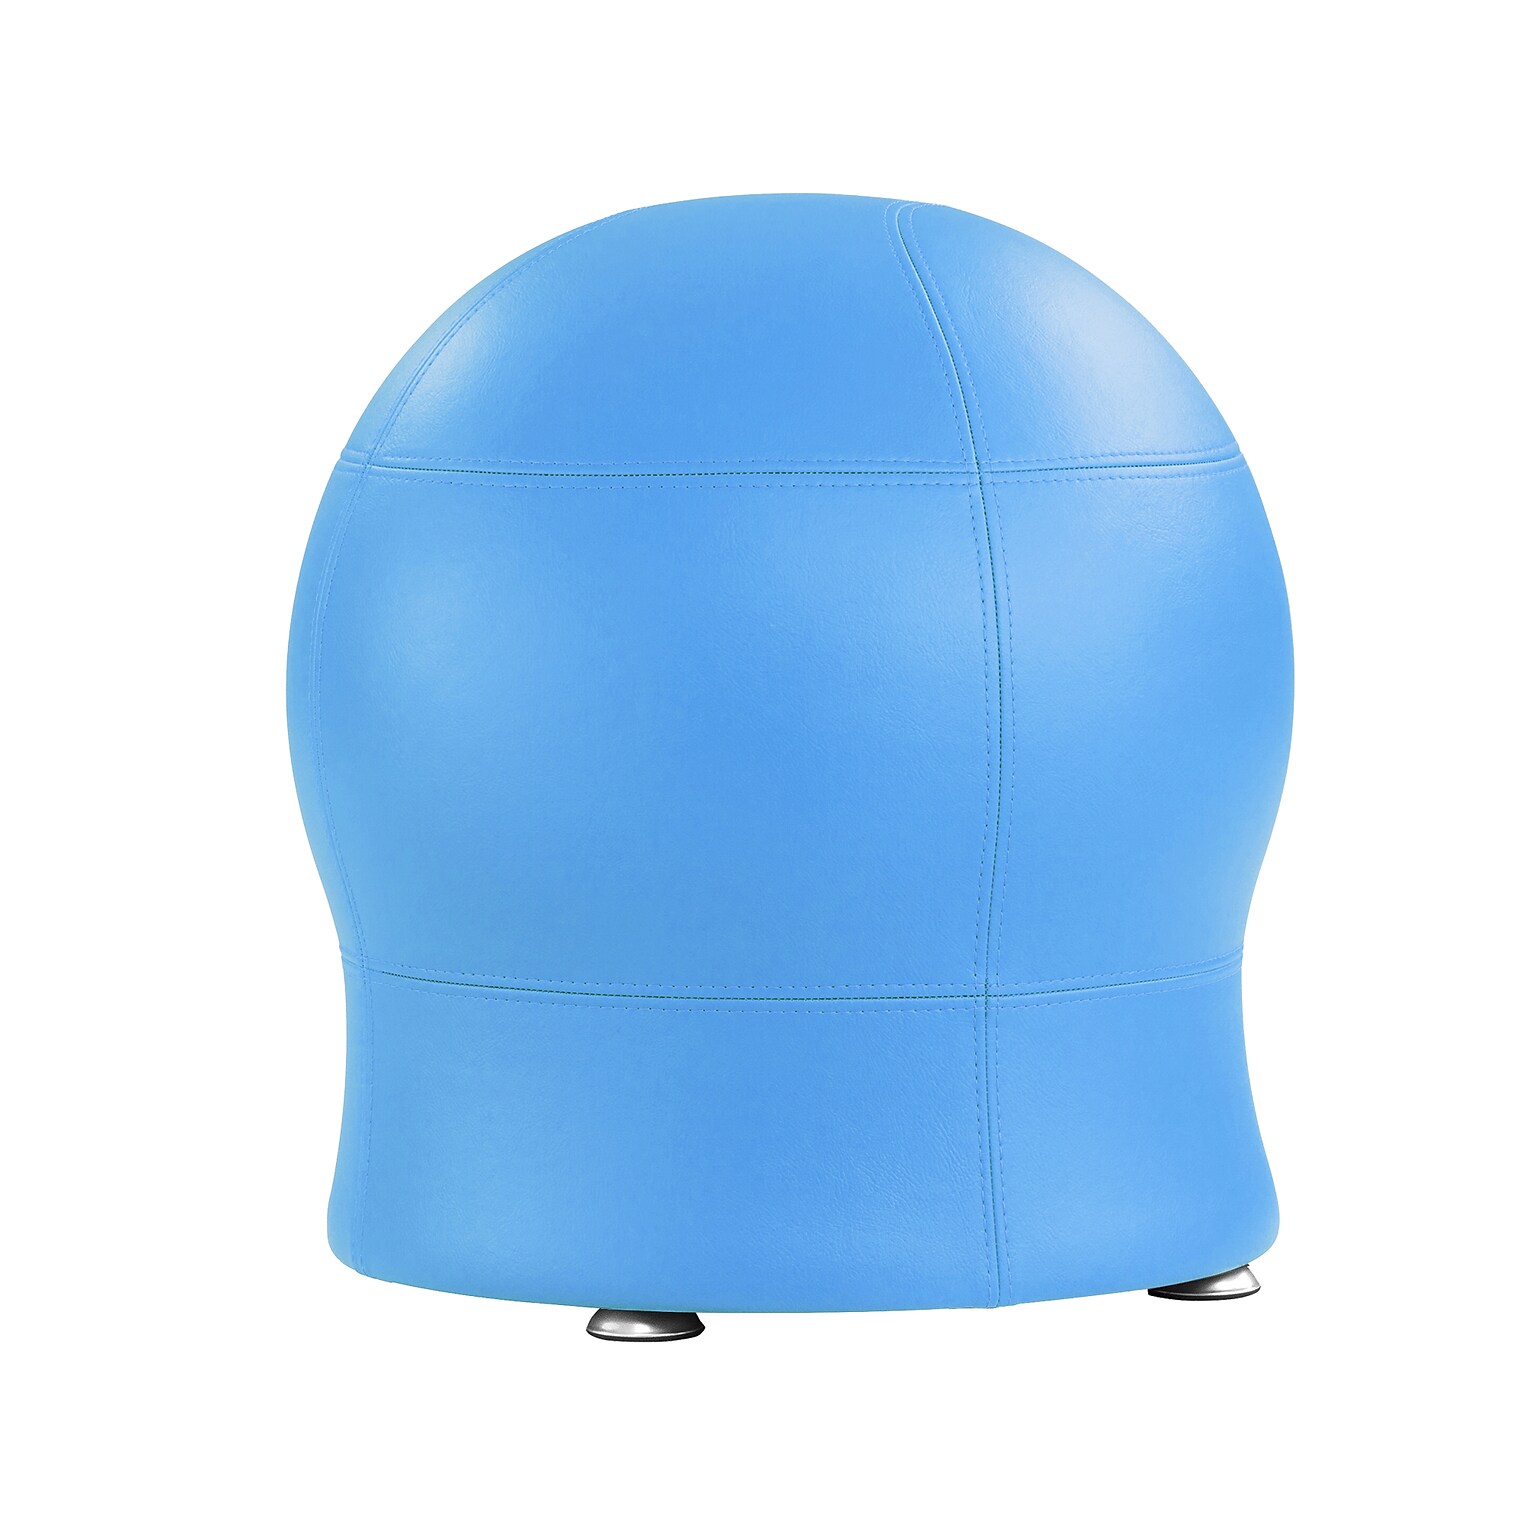 Safco Zenergy Armless Vinyl Ball Chair, Baby Blue (4751BUV)